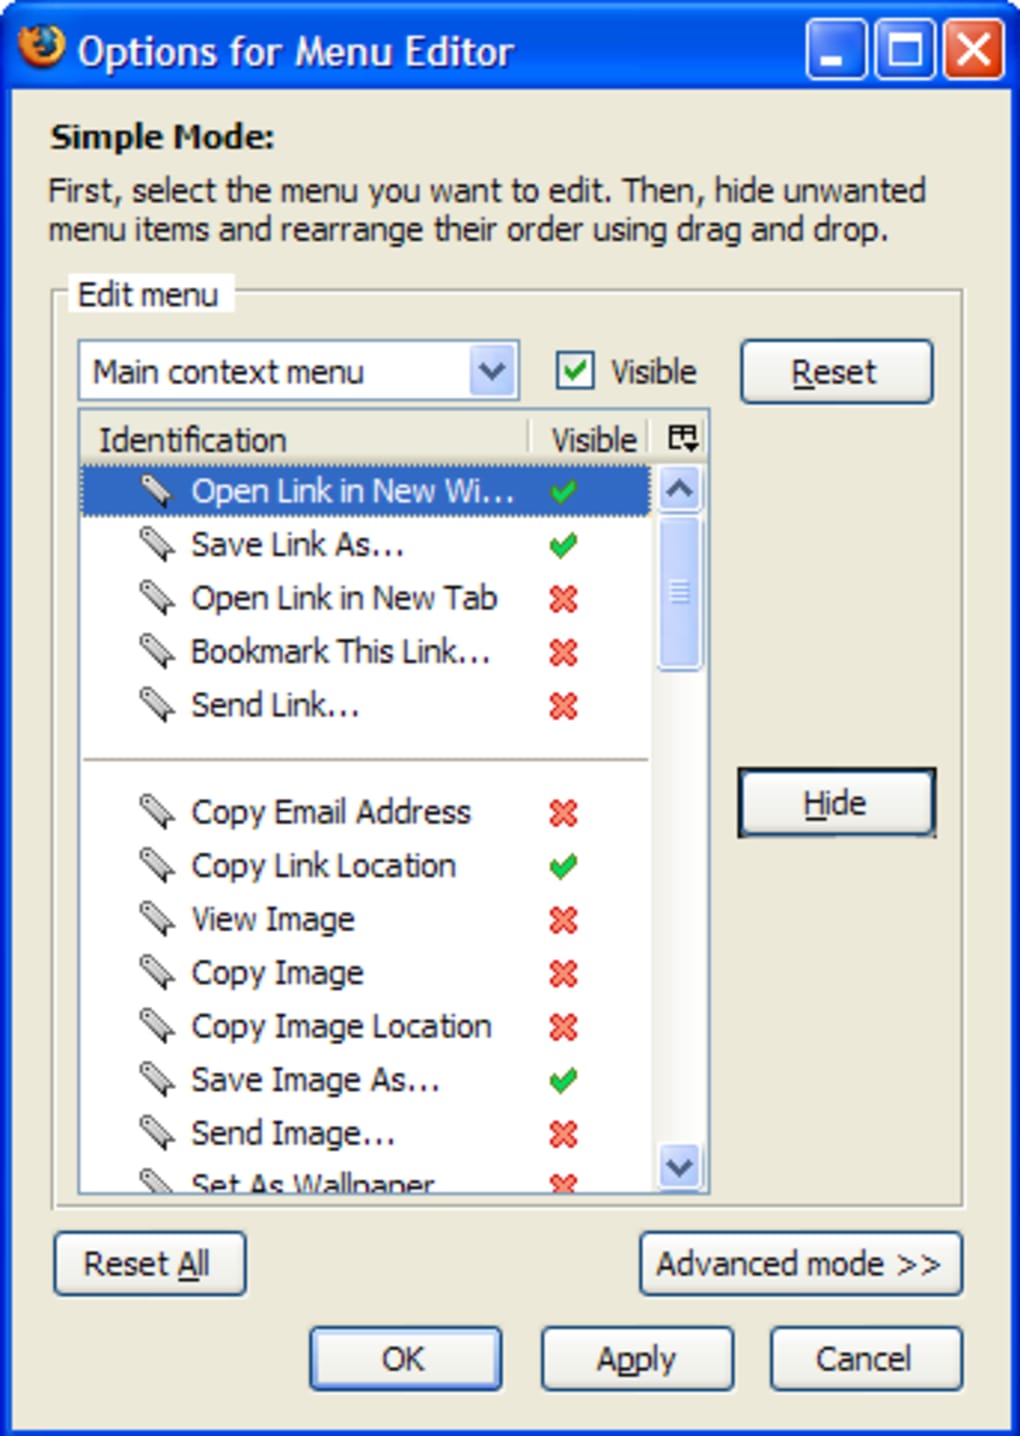 Context menu Editor. Simple Editor. MENUEDITOR 1.0.3.122. Simple edit